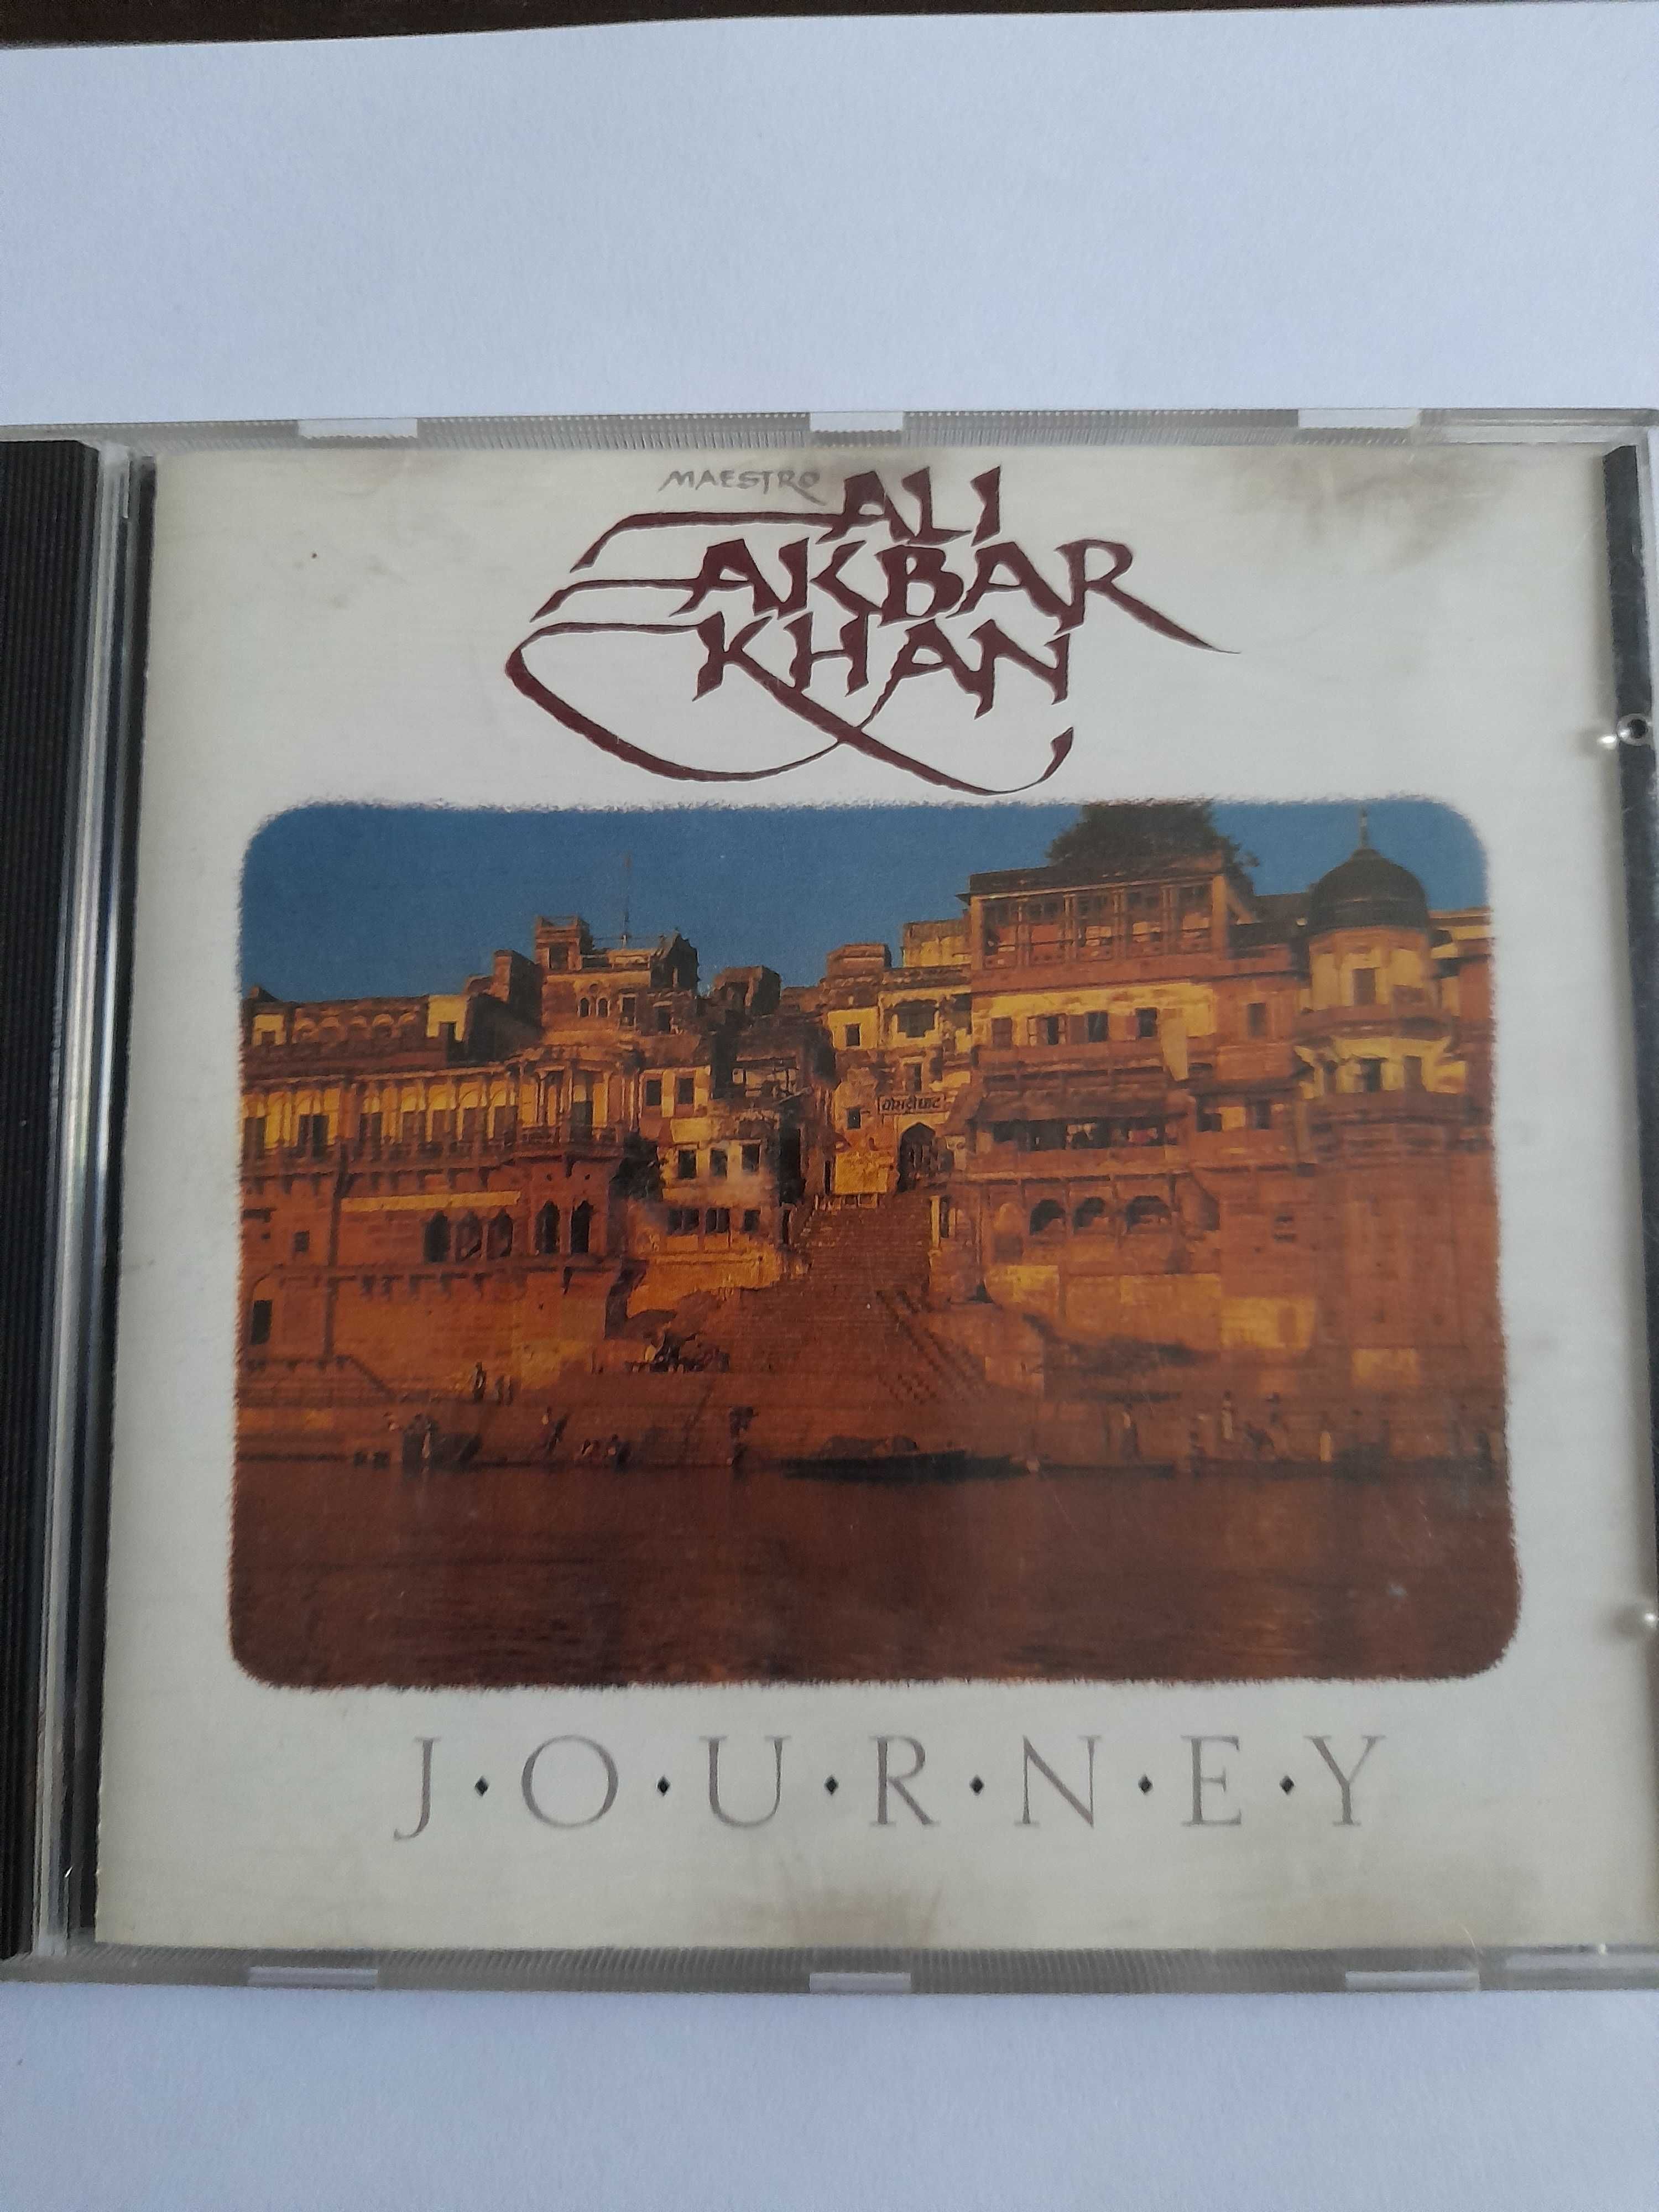 Ali Akbar Khan. Journey. CD